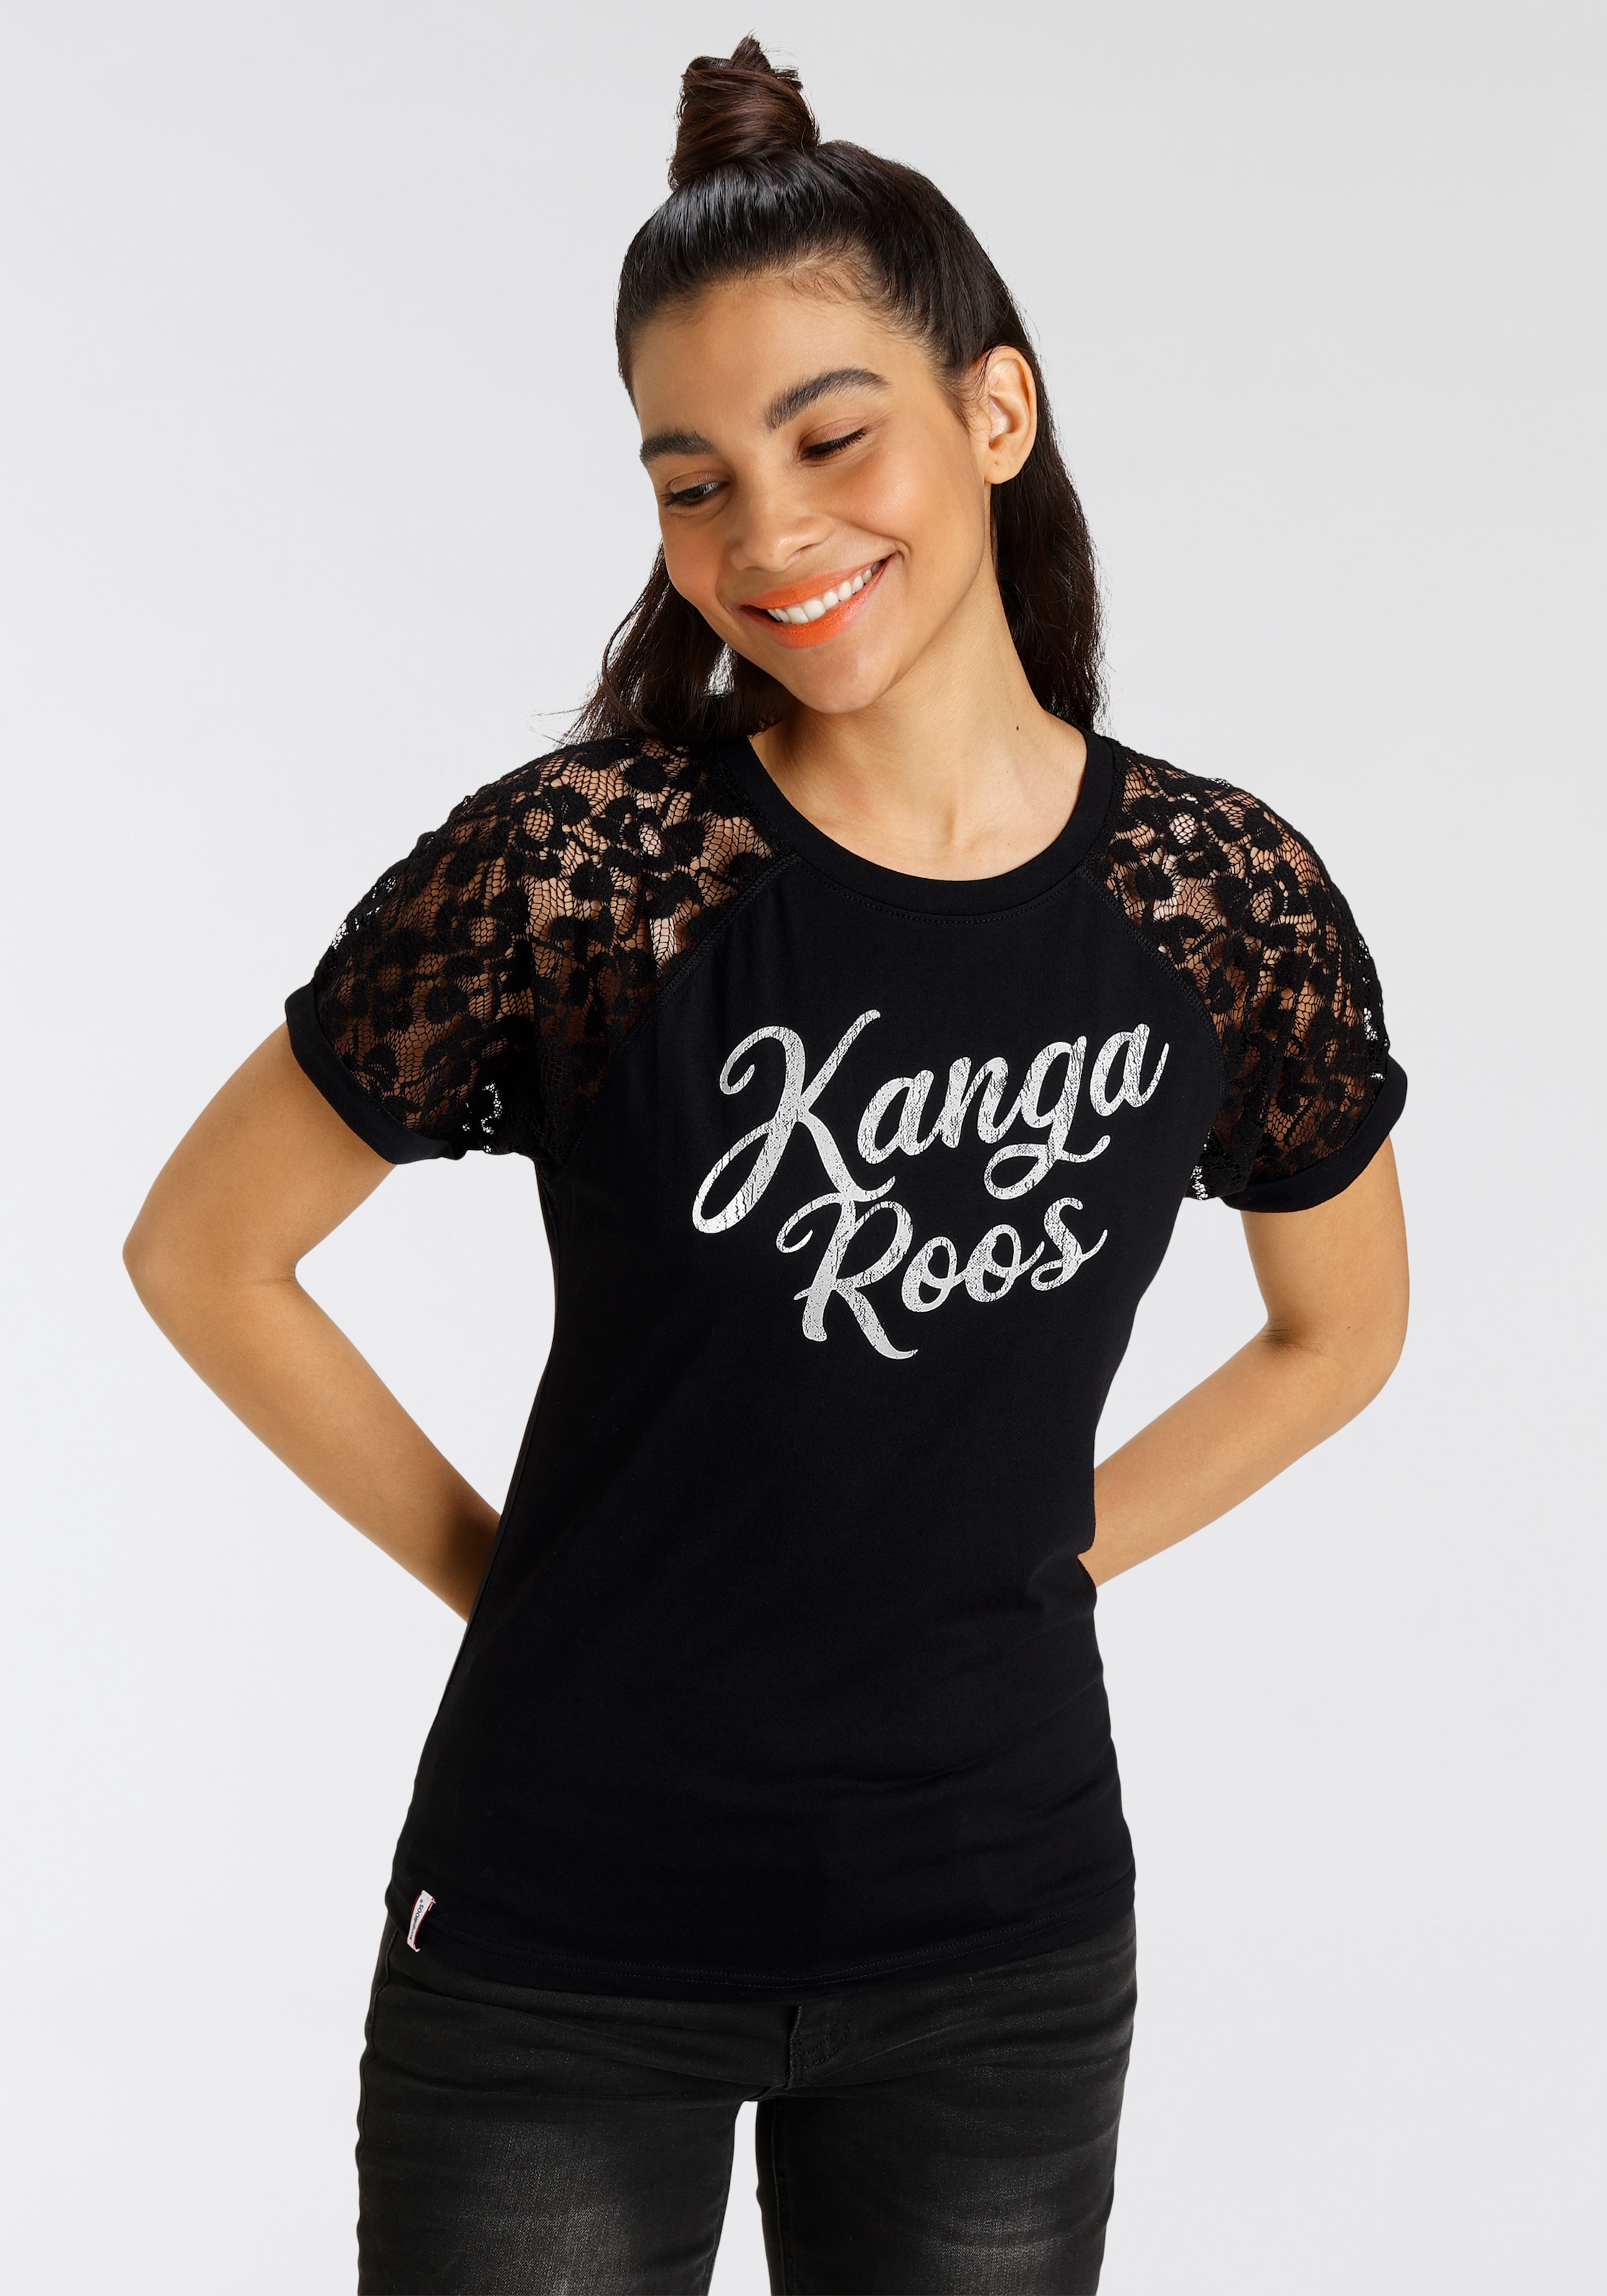 KangaROOS Spitzenshirt, mit Raglanärmeln und Markenschriftzug